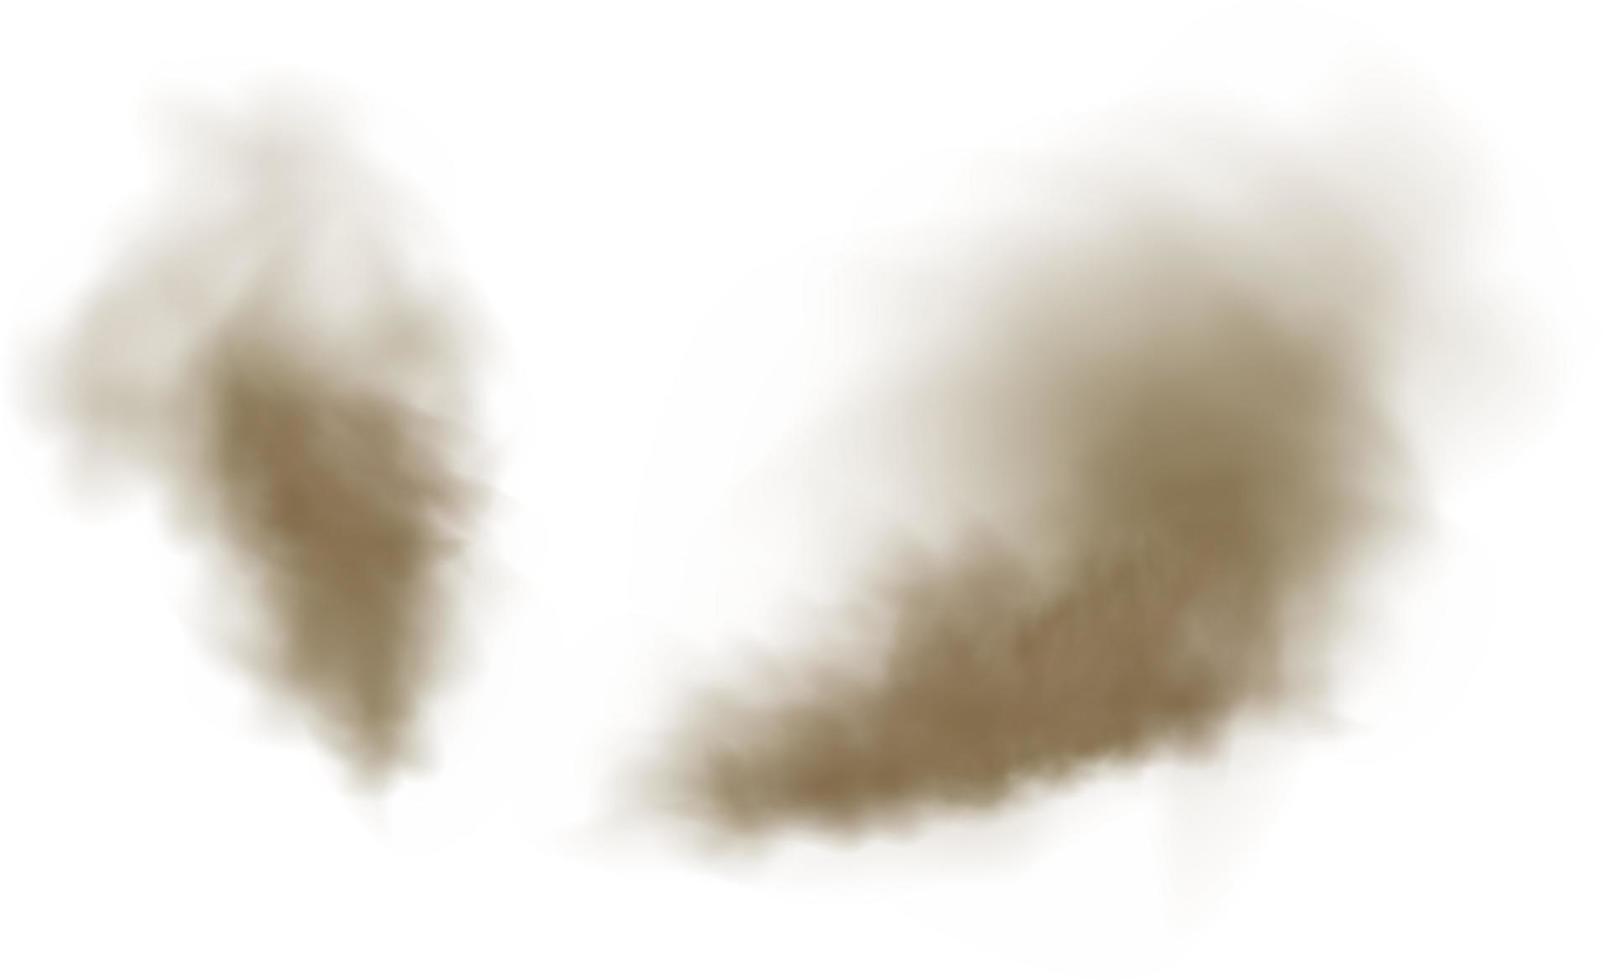 achtergrond van een wolk van bruin stof en zand met deeltjes van vliegend droog zand en aarde. vector